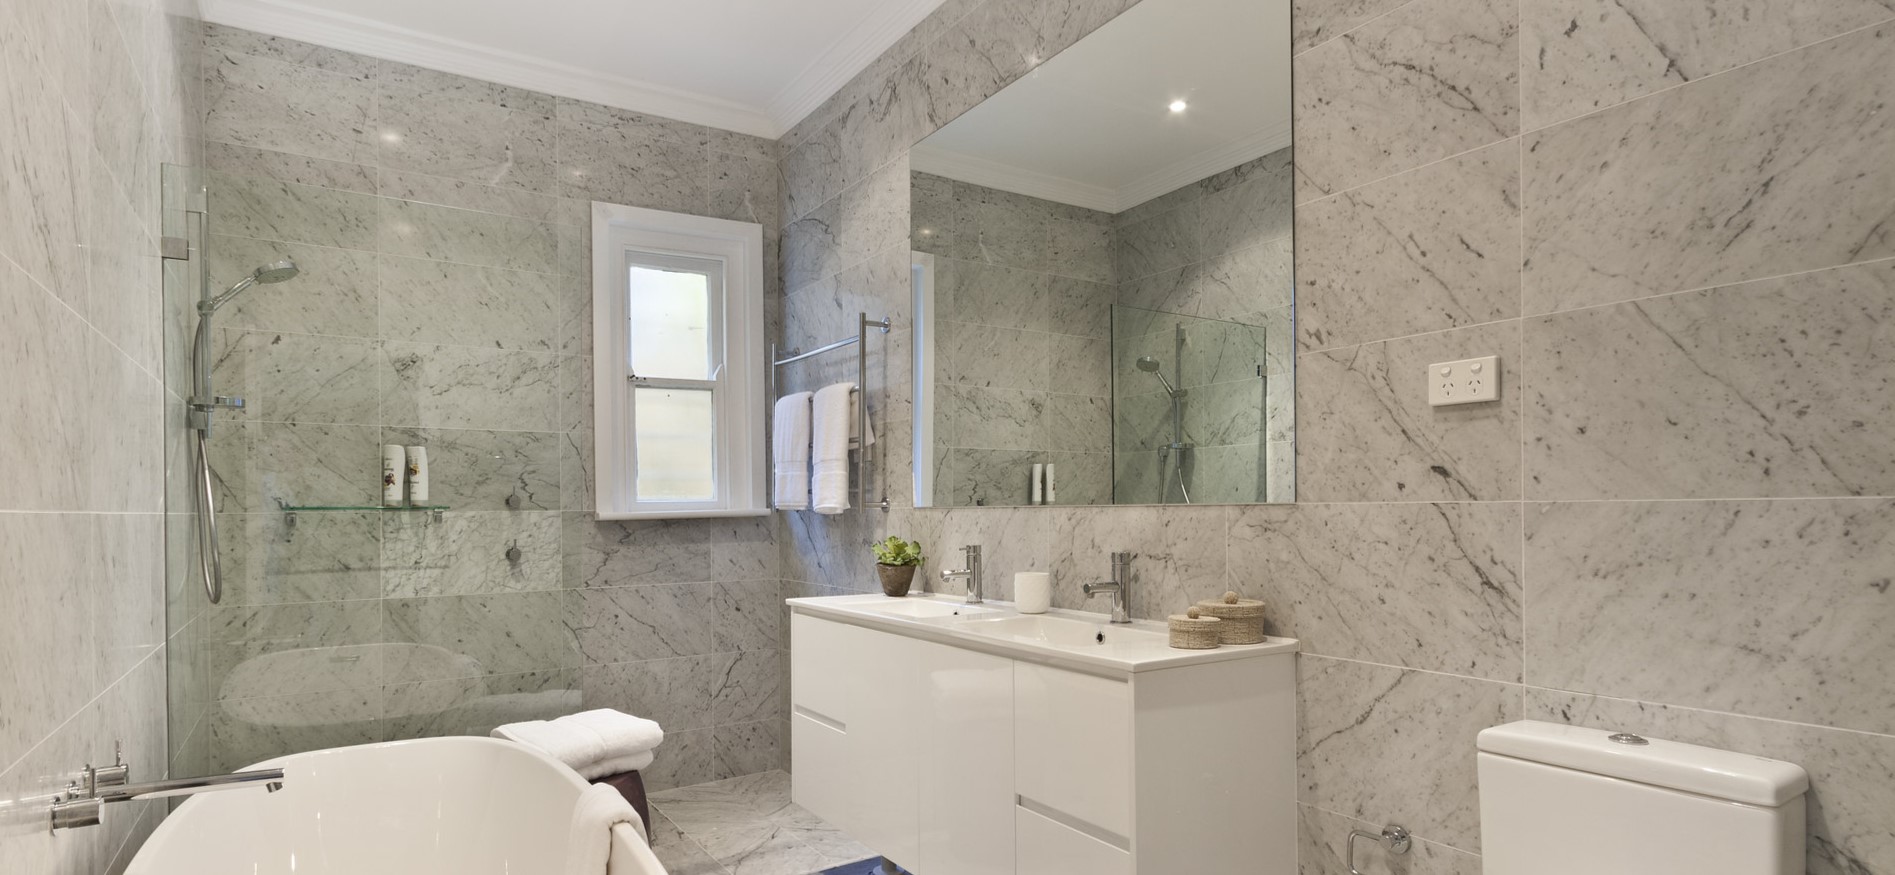 Зеркало без рамы можно использовать в интерьере ванной в стиле минимализм